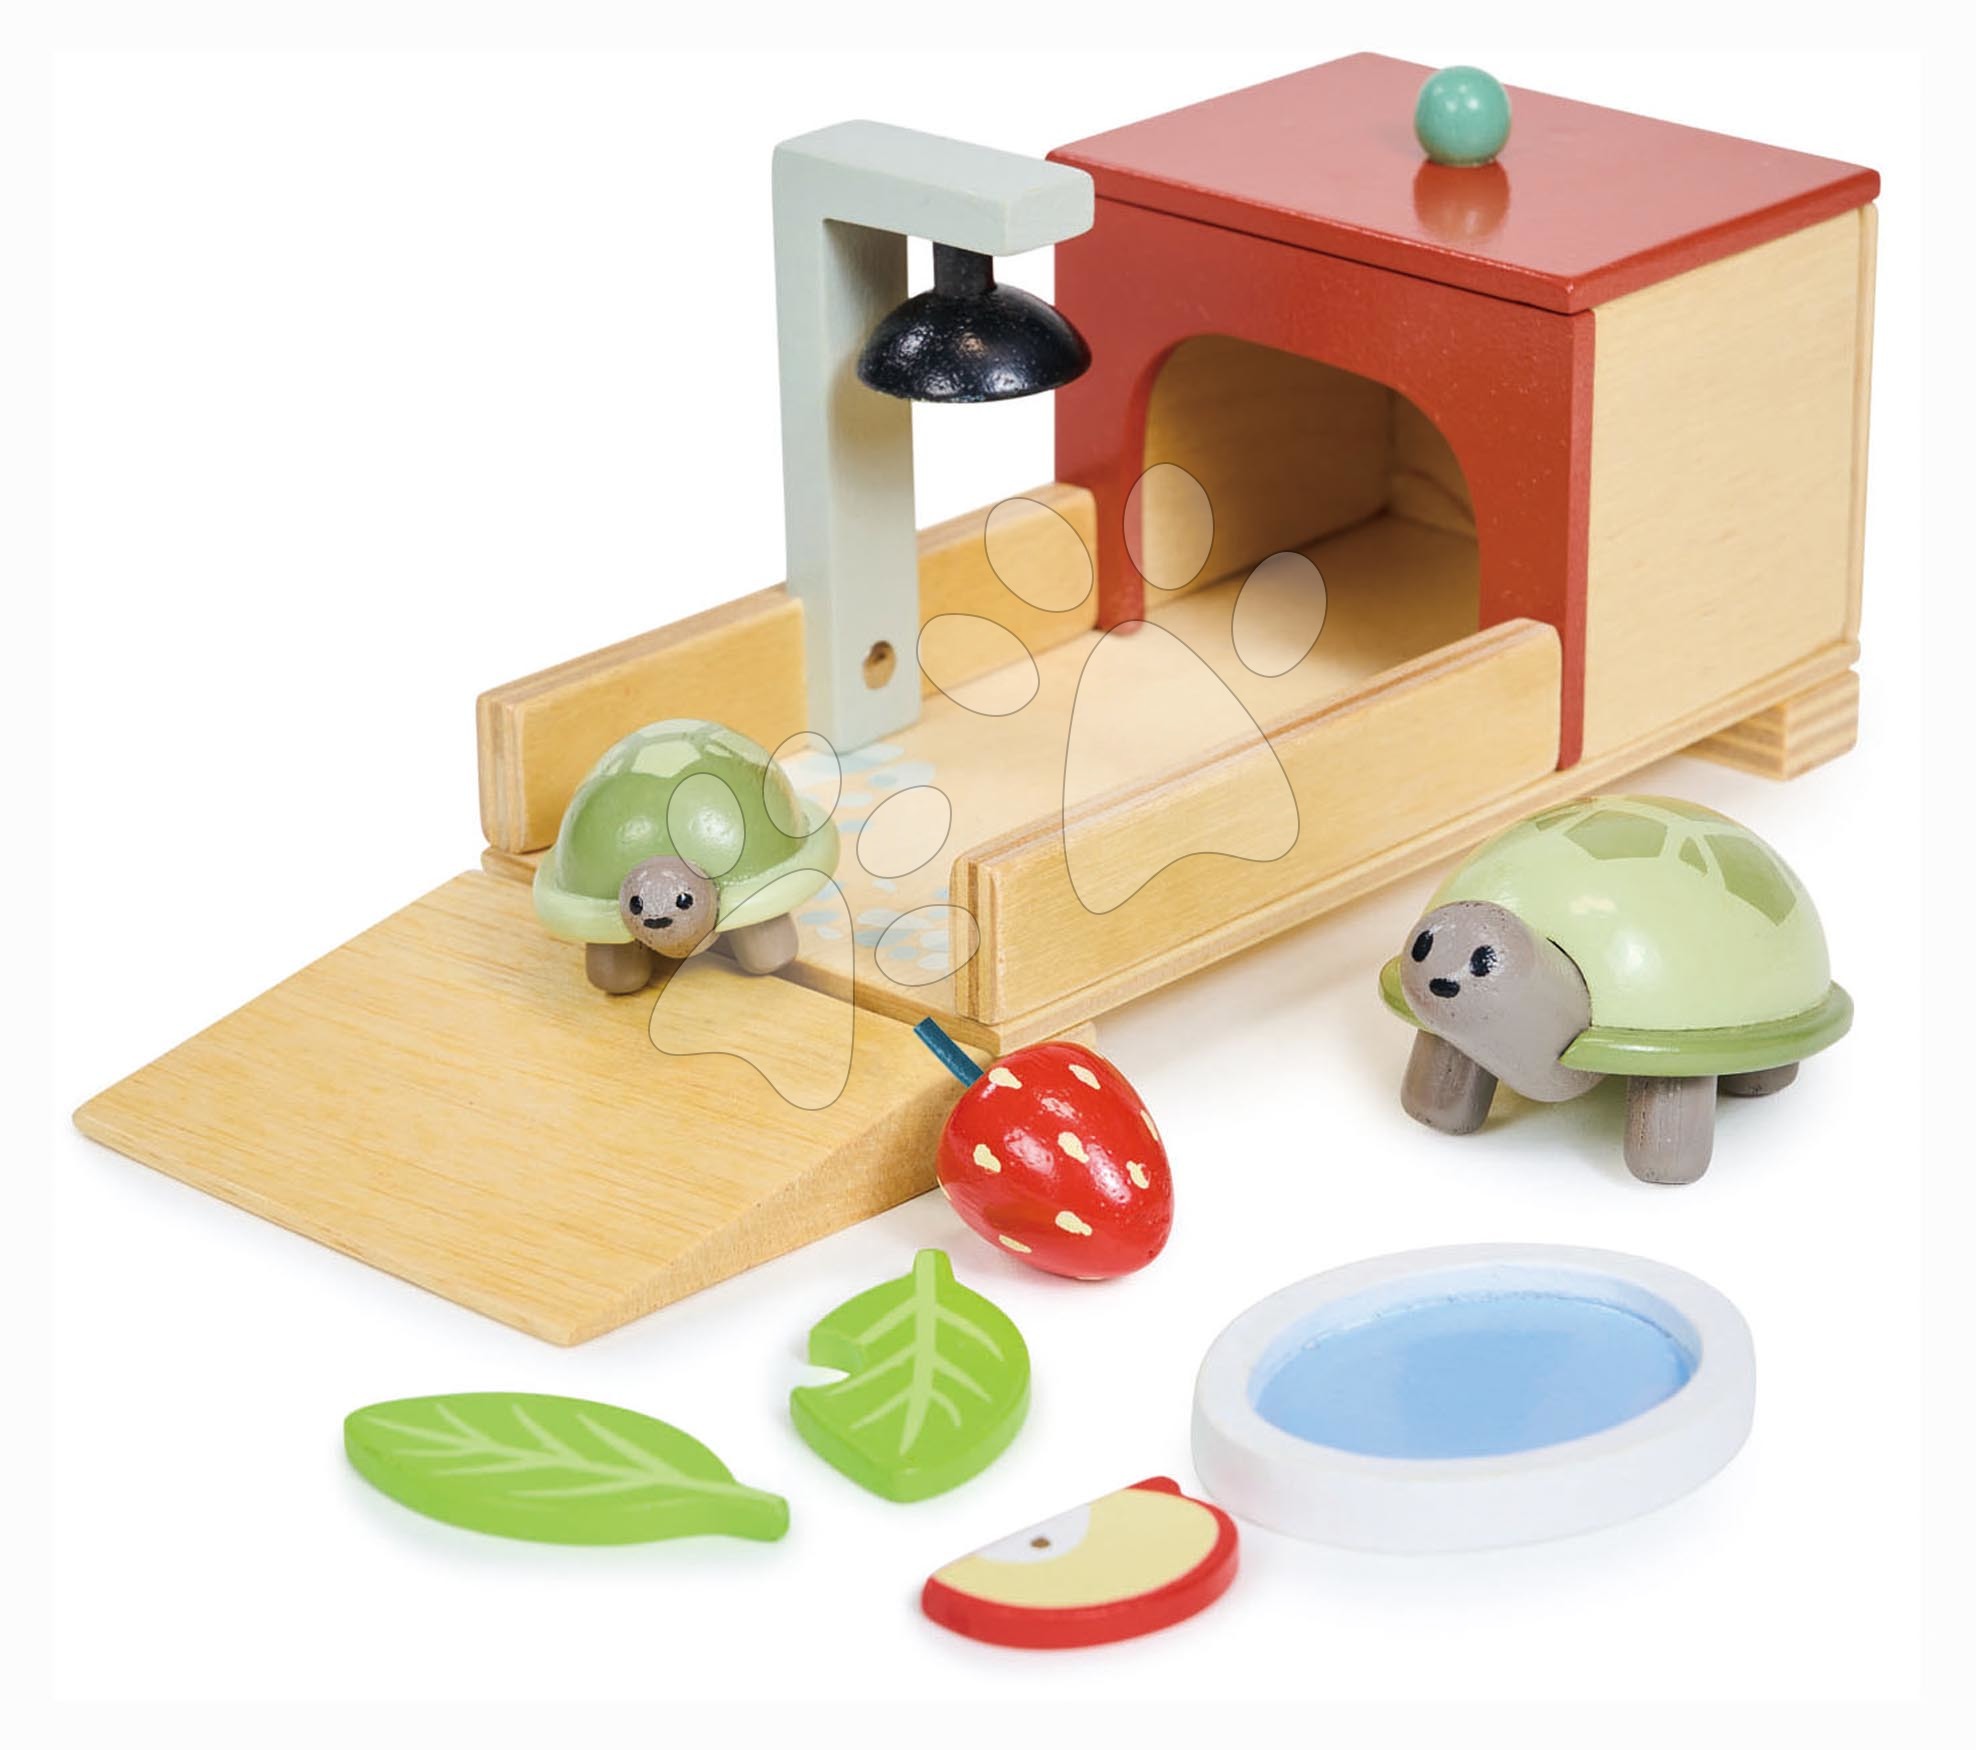 Fa teknősbéka lak Tortoise Pet Set Tender Leaf Toys 2 figurával és kiegészítőkkel